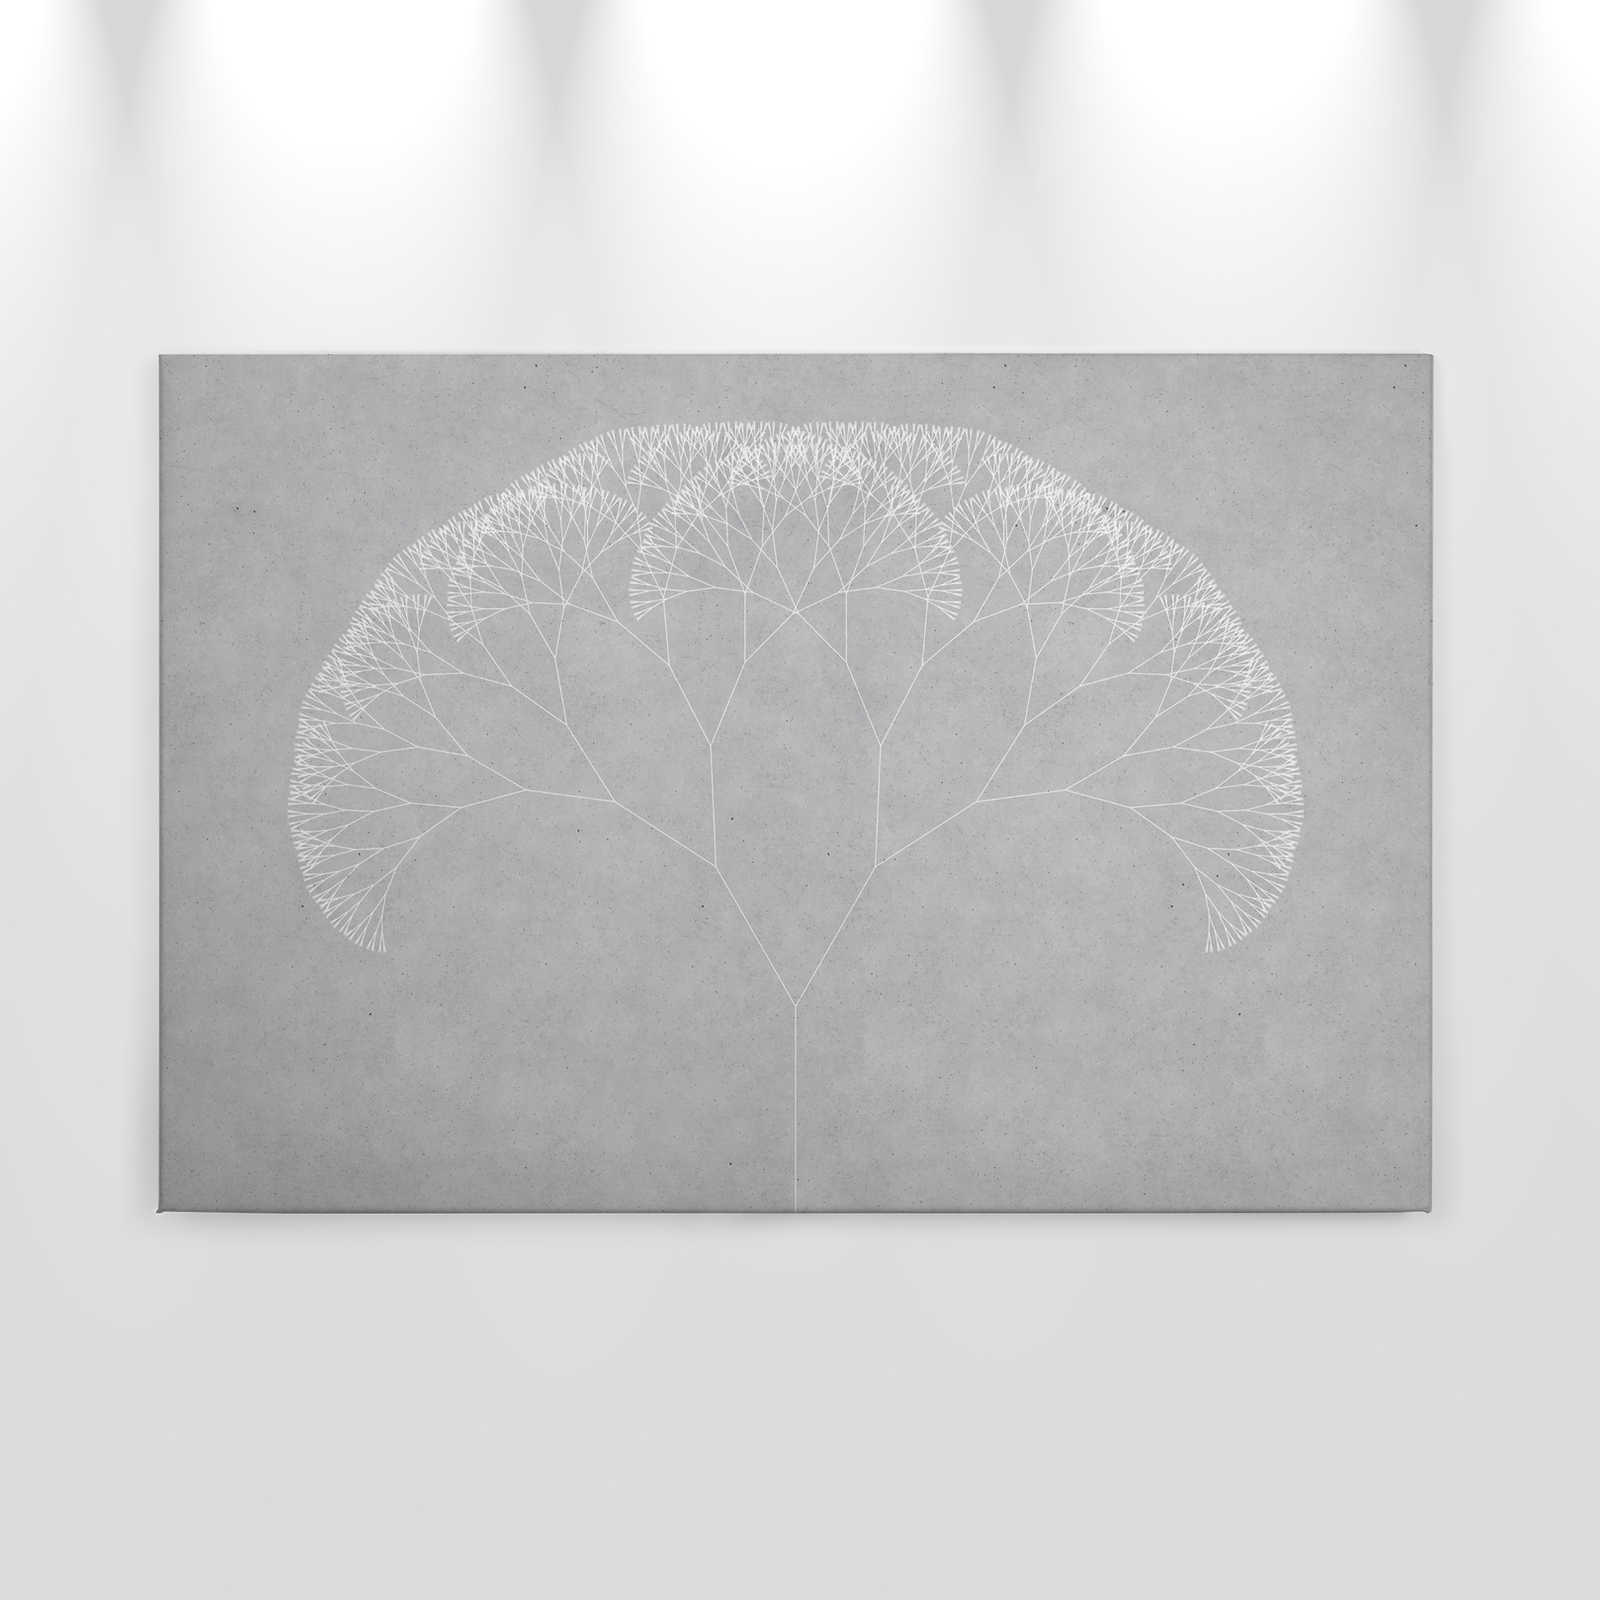             Canvas schilderij Dandelions Tree | grijs, wit - 0,90 m x 0,60 m
        